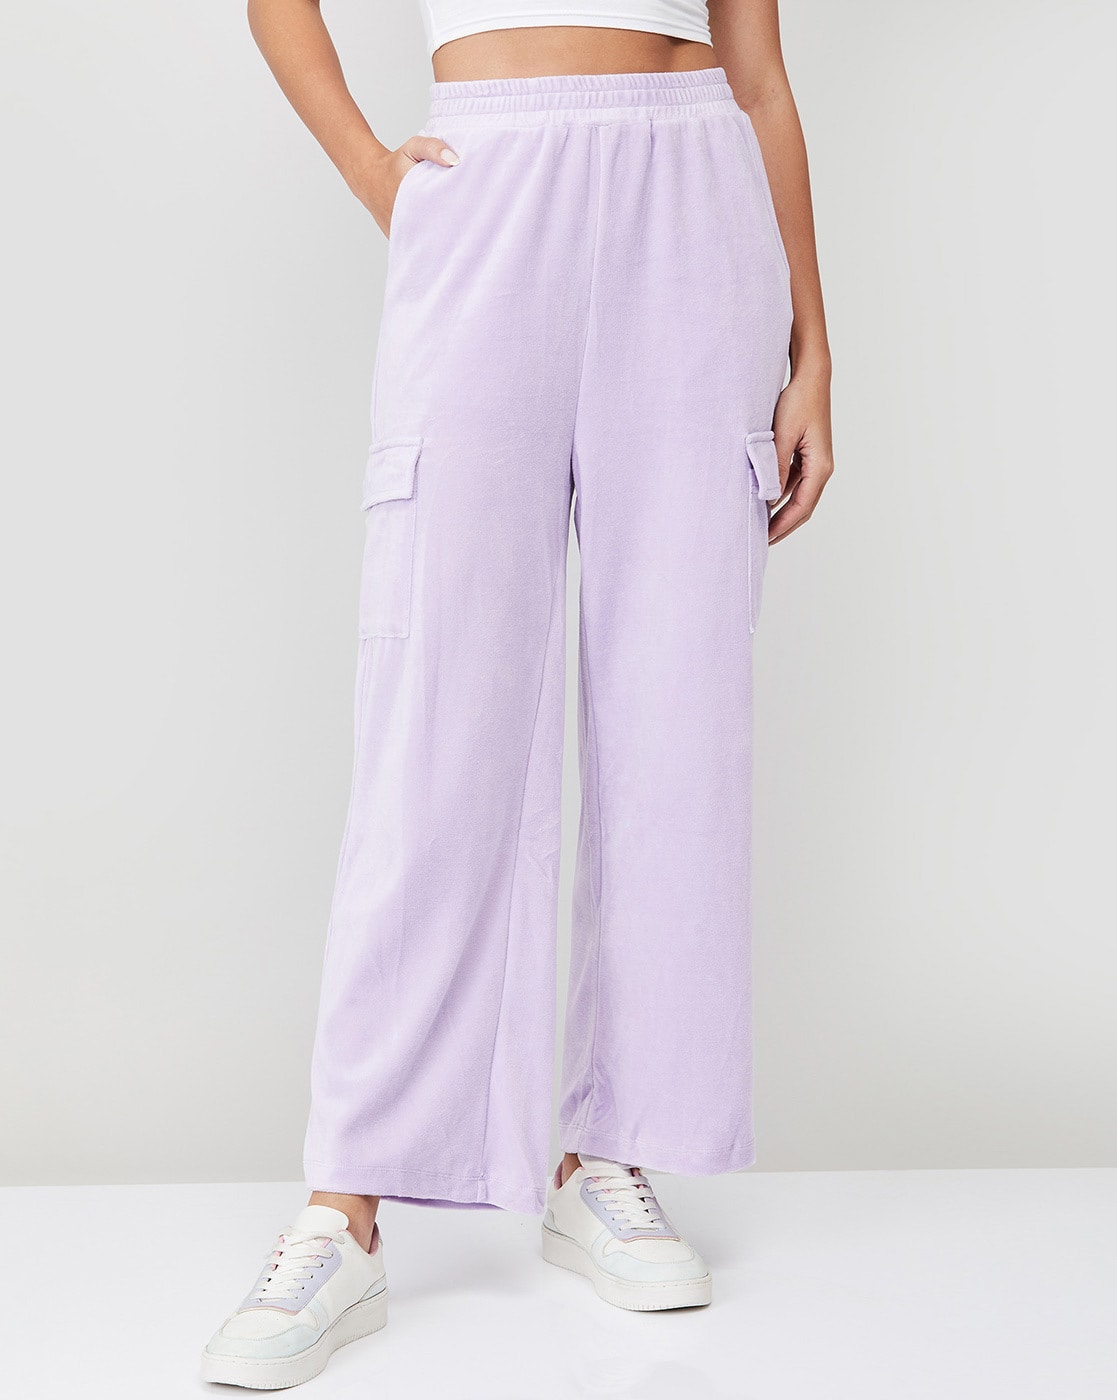 Lavender Pant Suit for Women Office Pant Suit Set for Women  Etsy   Pantsuits for women Pant suits for women Suits for women